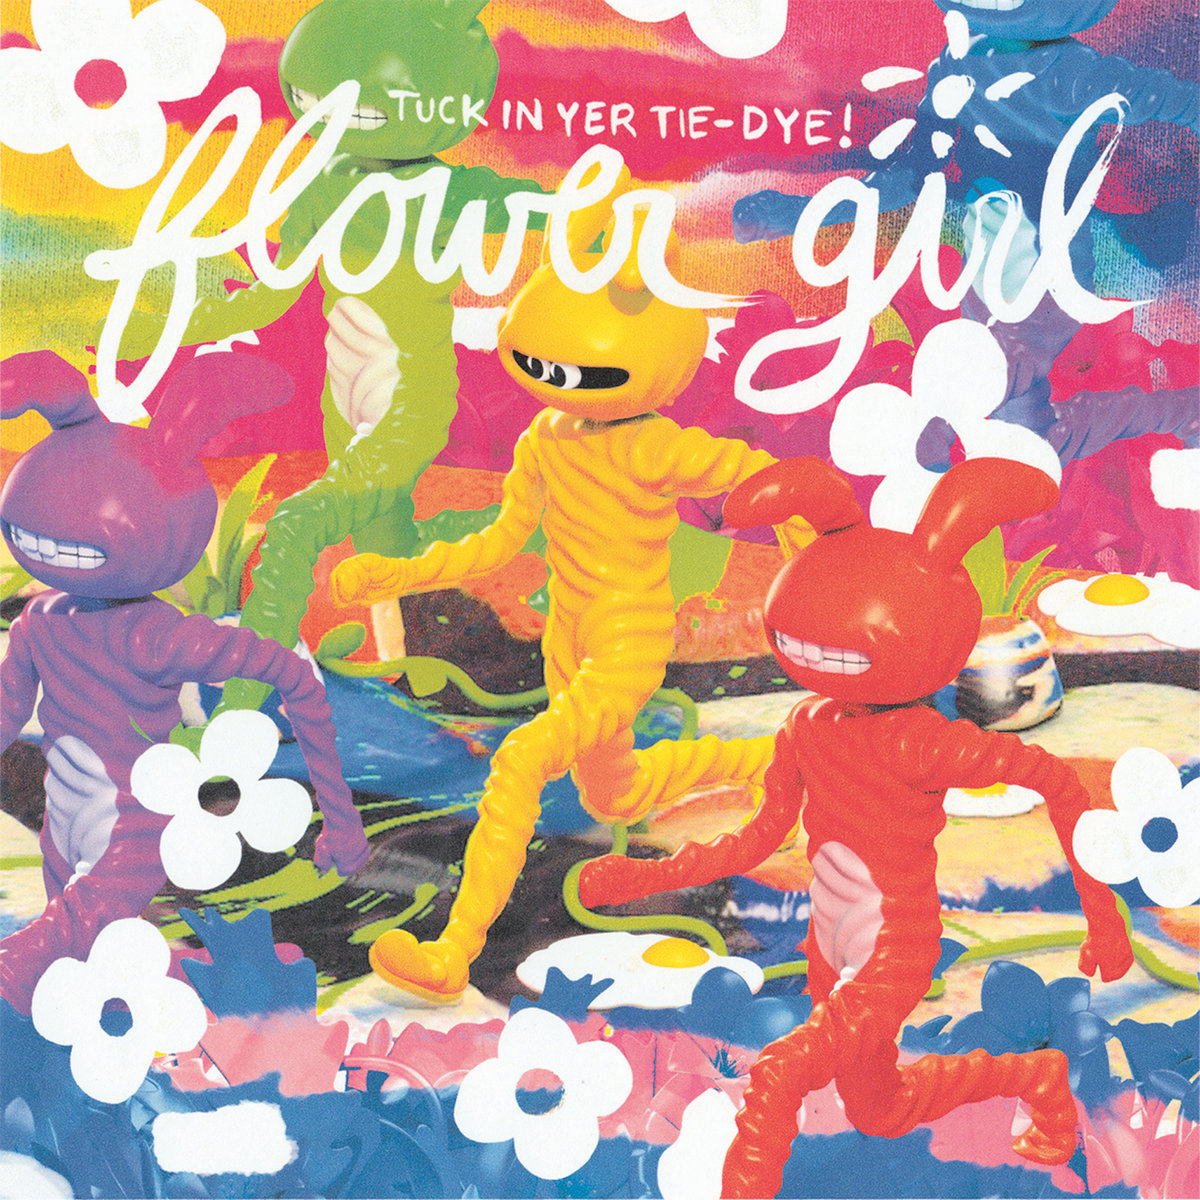 Flower Girl - Tuck In Your Tie Dye